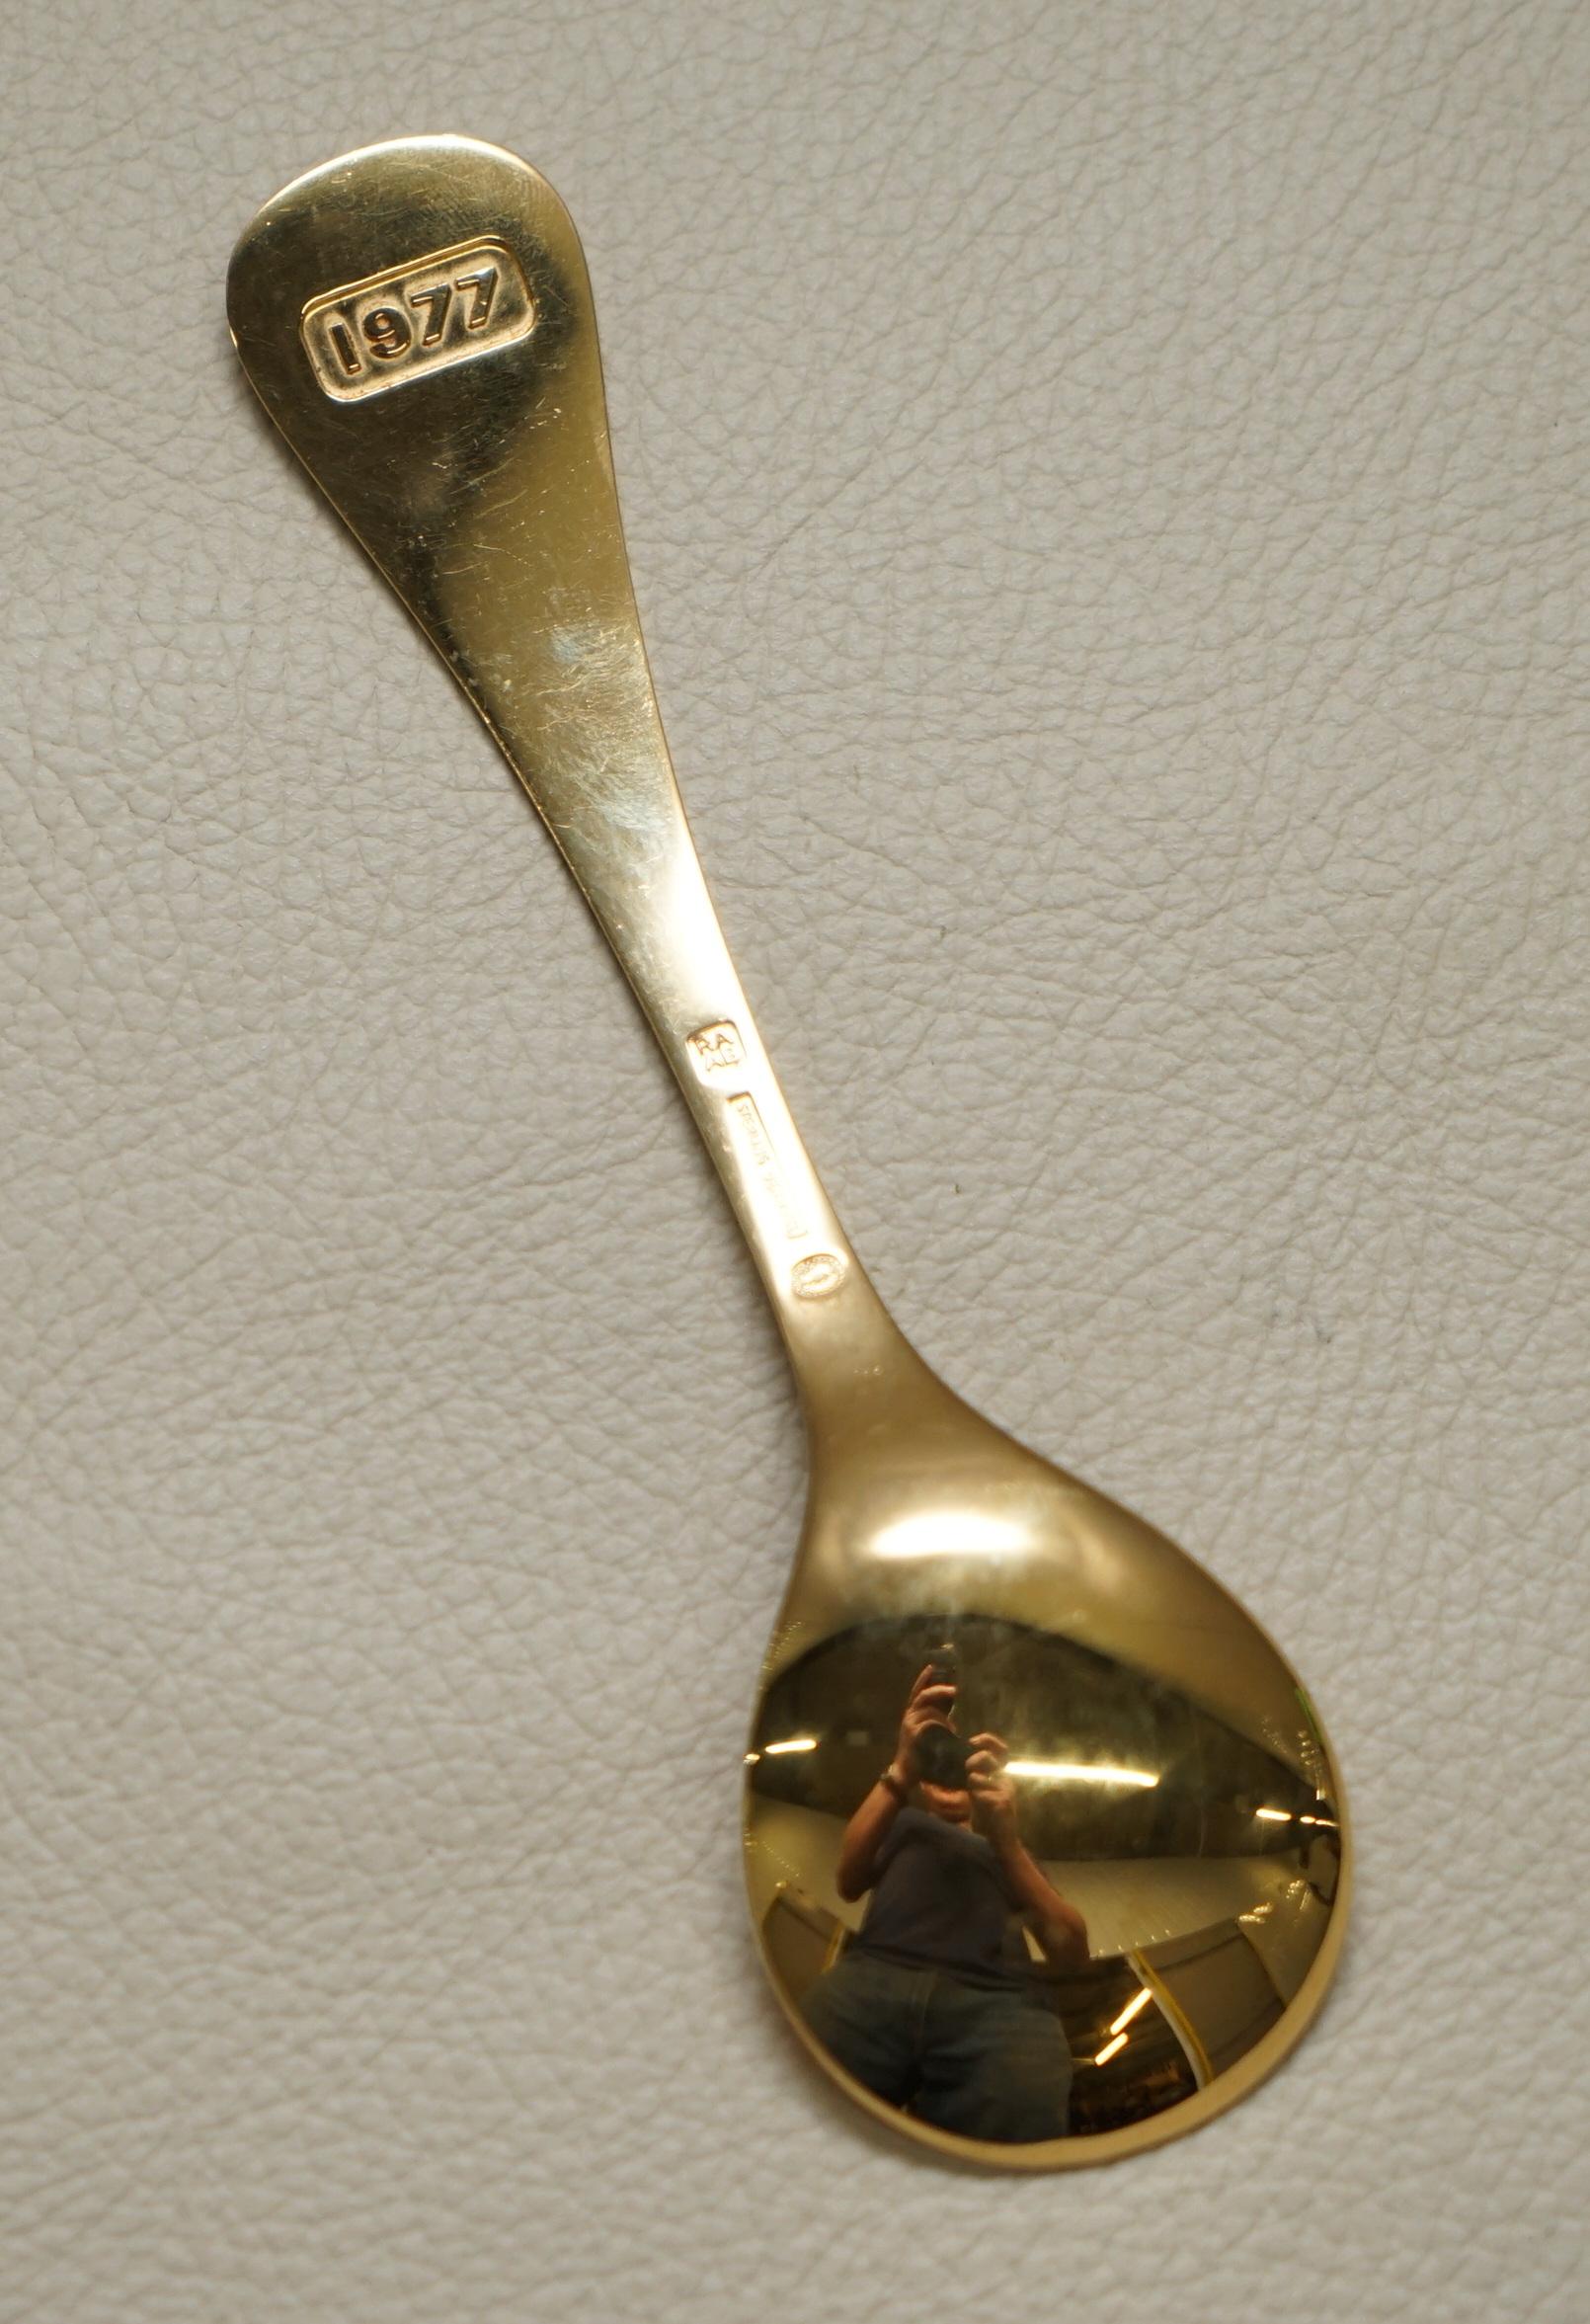 1977 silver jubilee sugar spoon